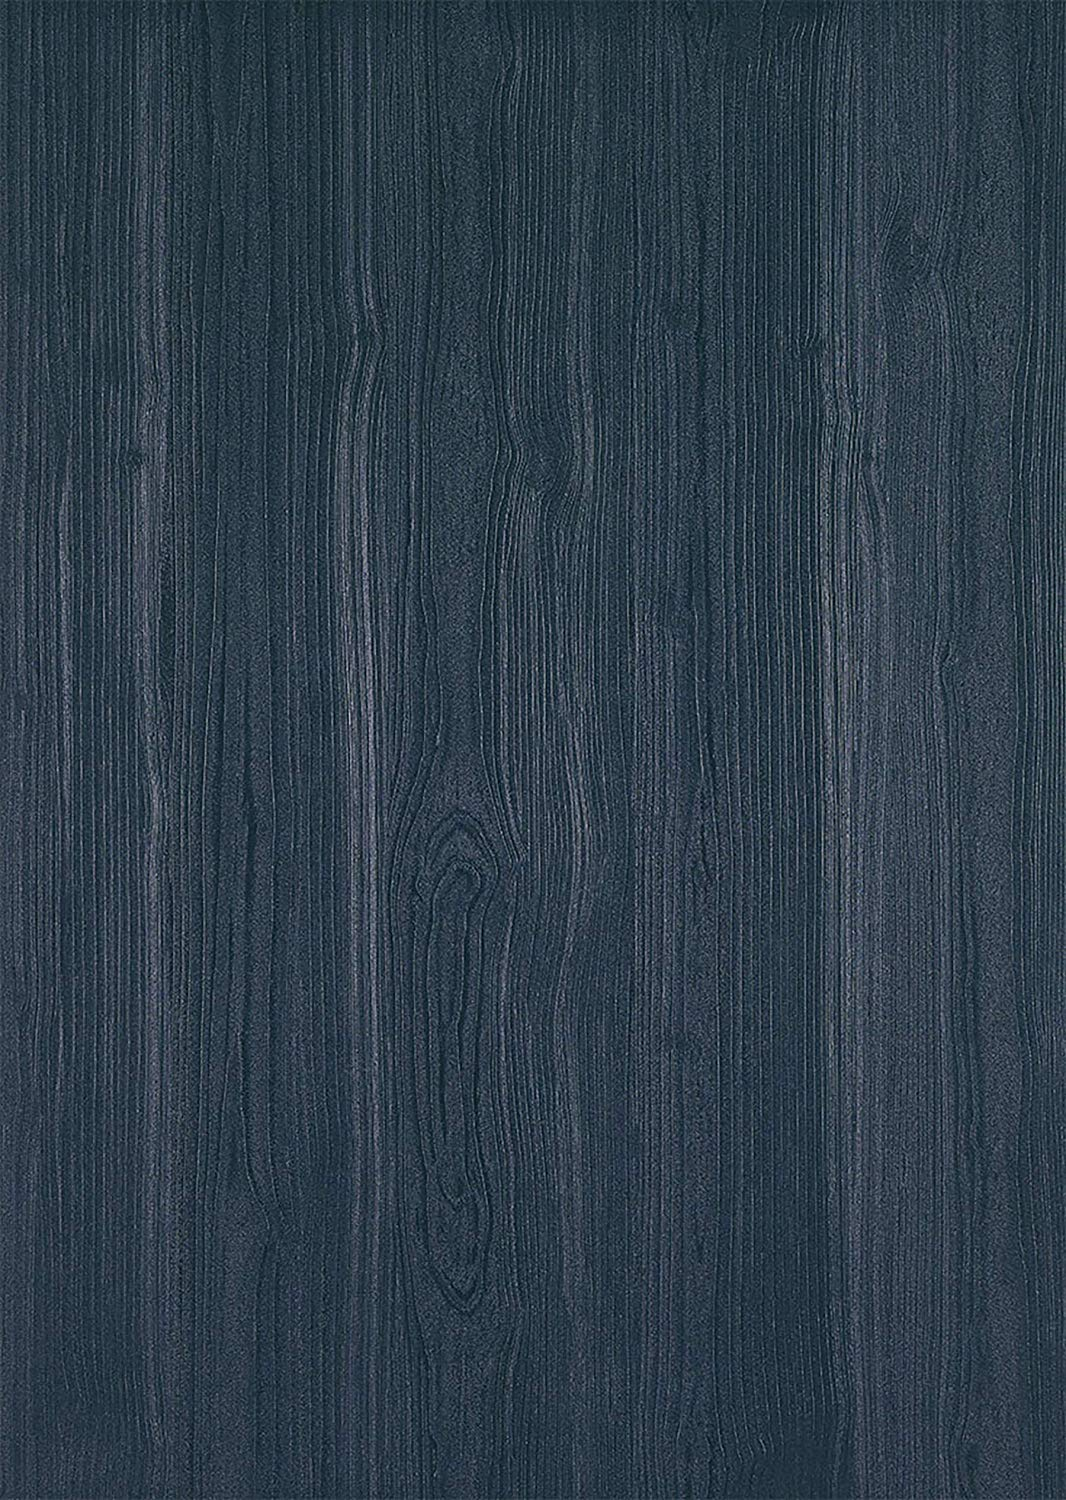 Billede af Træ folie-Quadro - Night Blue-1,5 meter rulle-67,5 cm